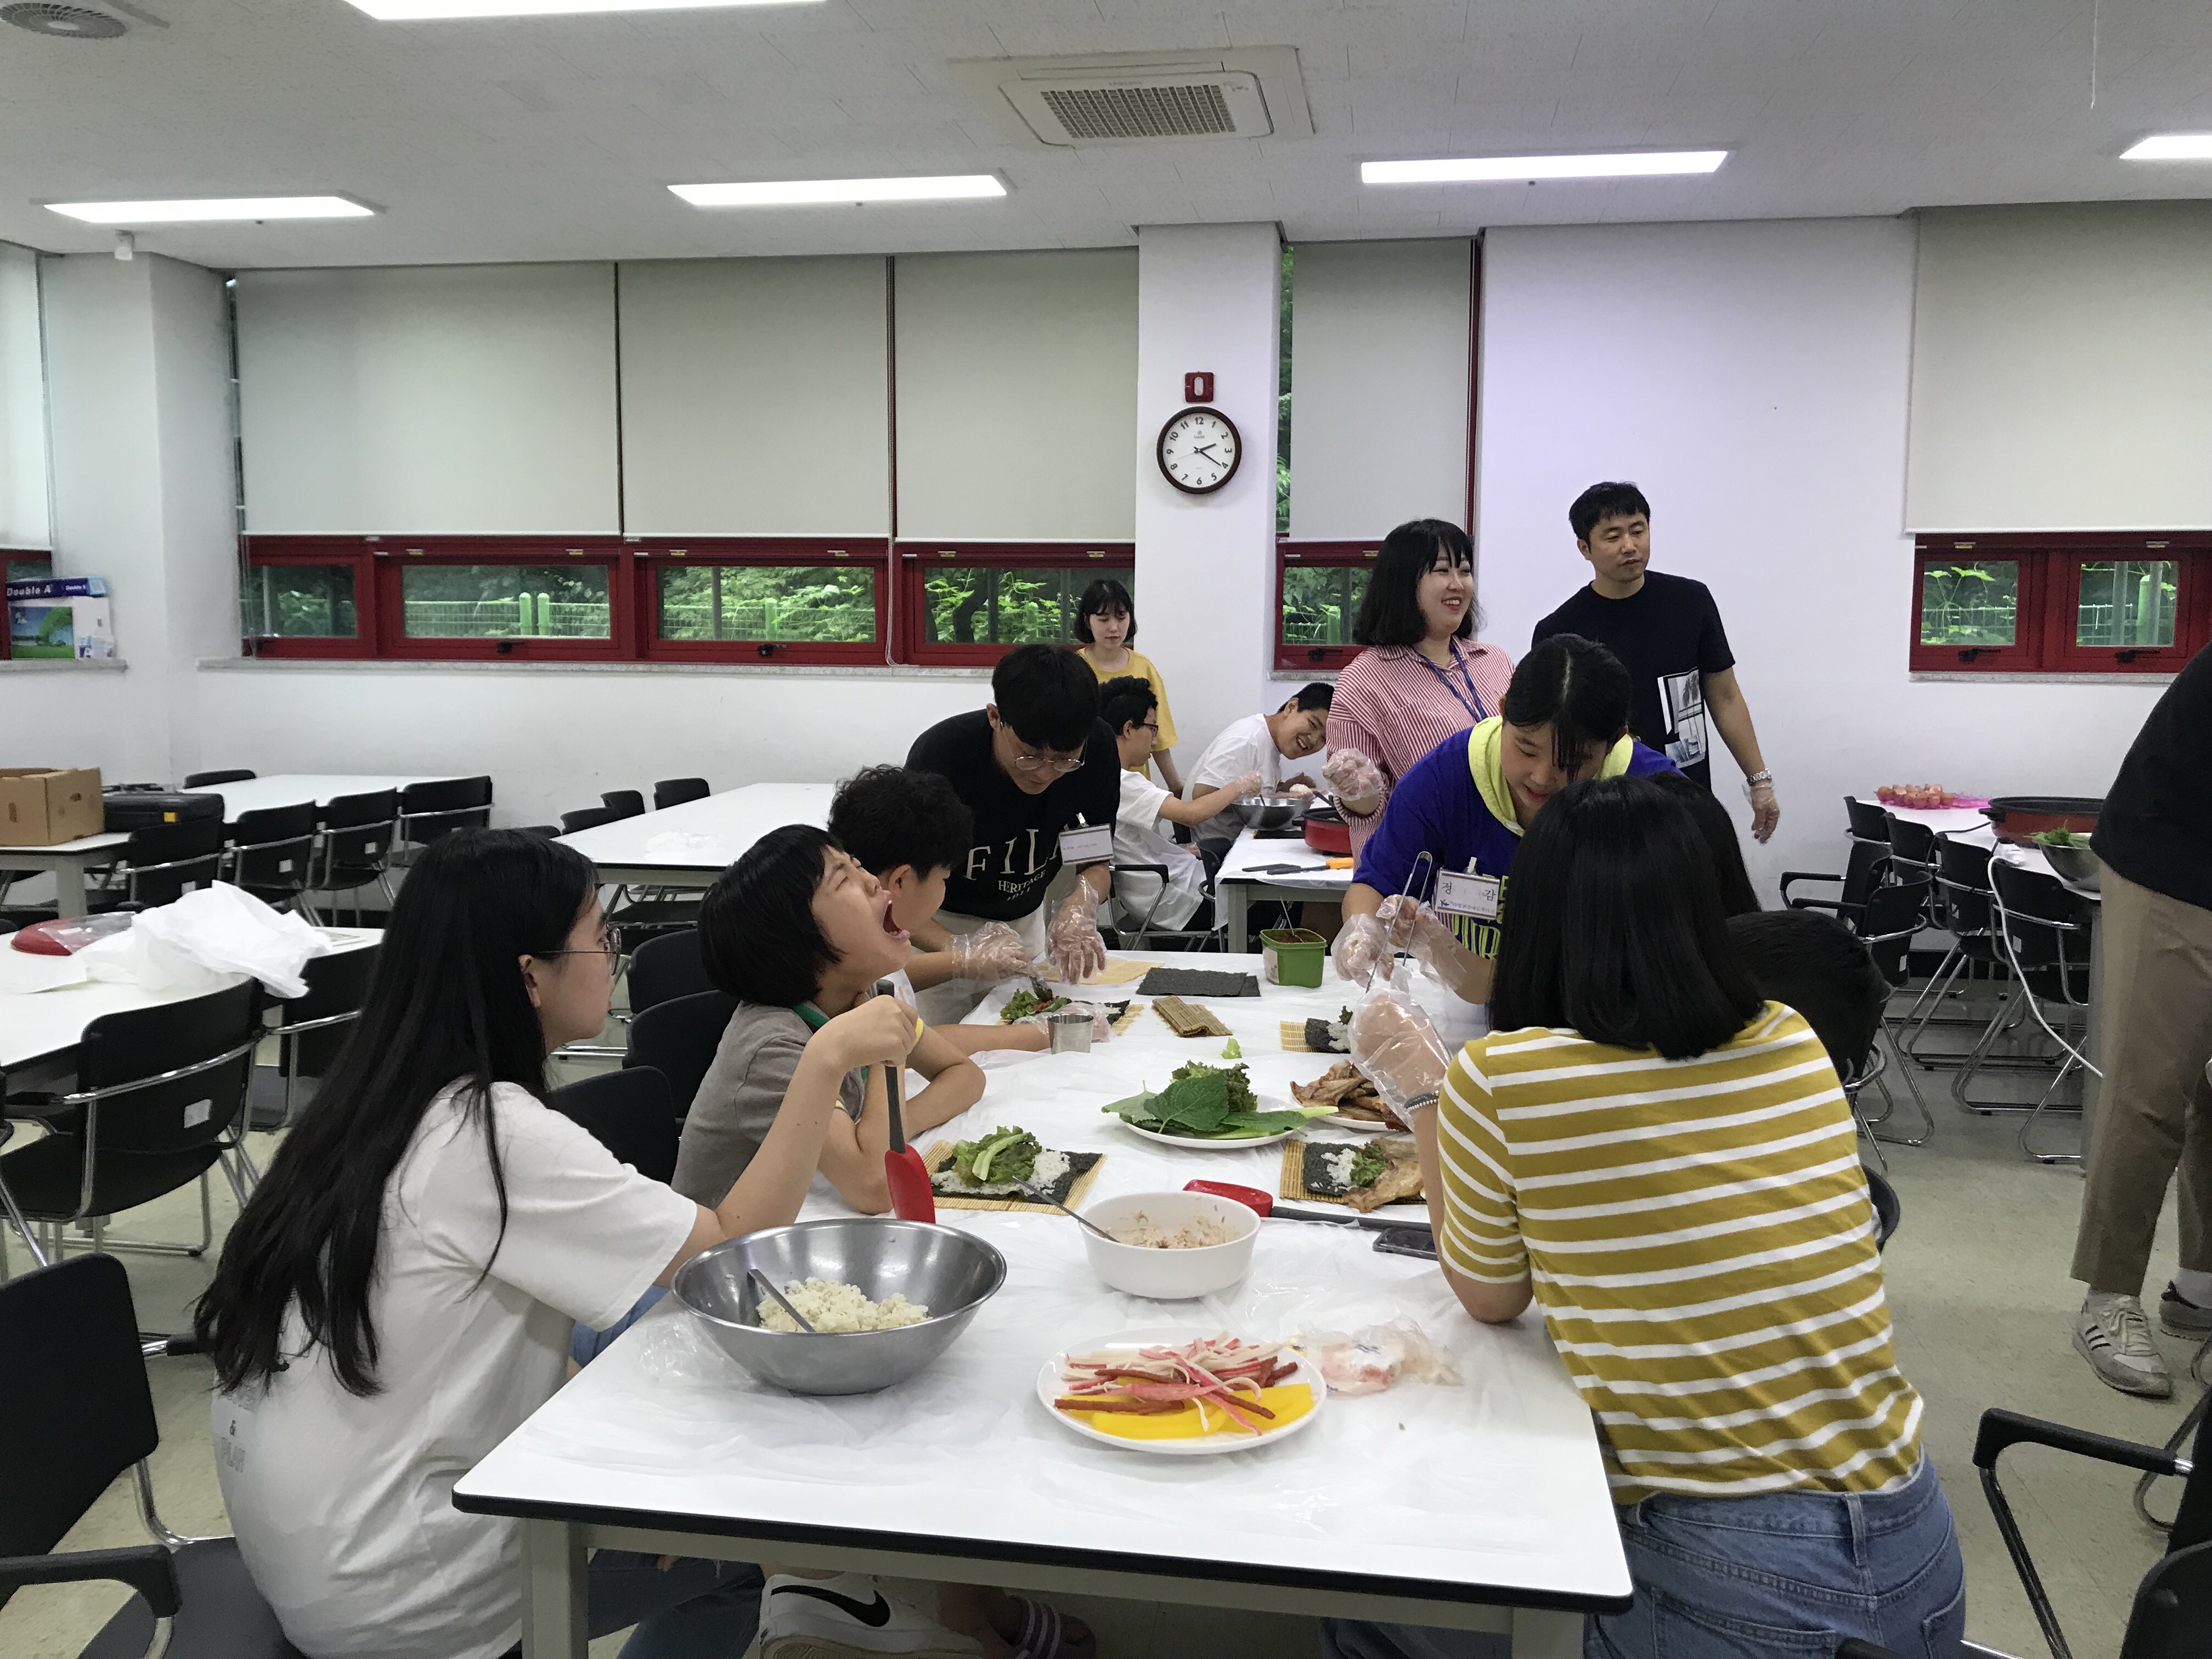 요리교실에서 김밥을 만들려고 강사님의 설명을 듣고 있는 모습